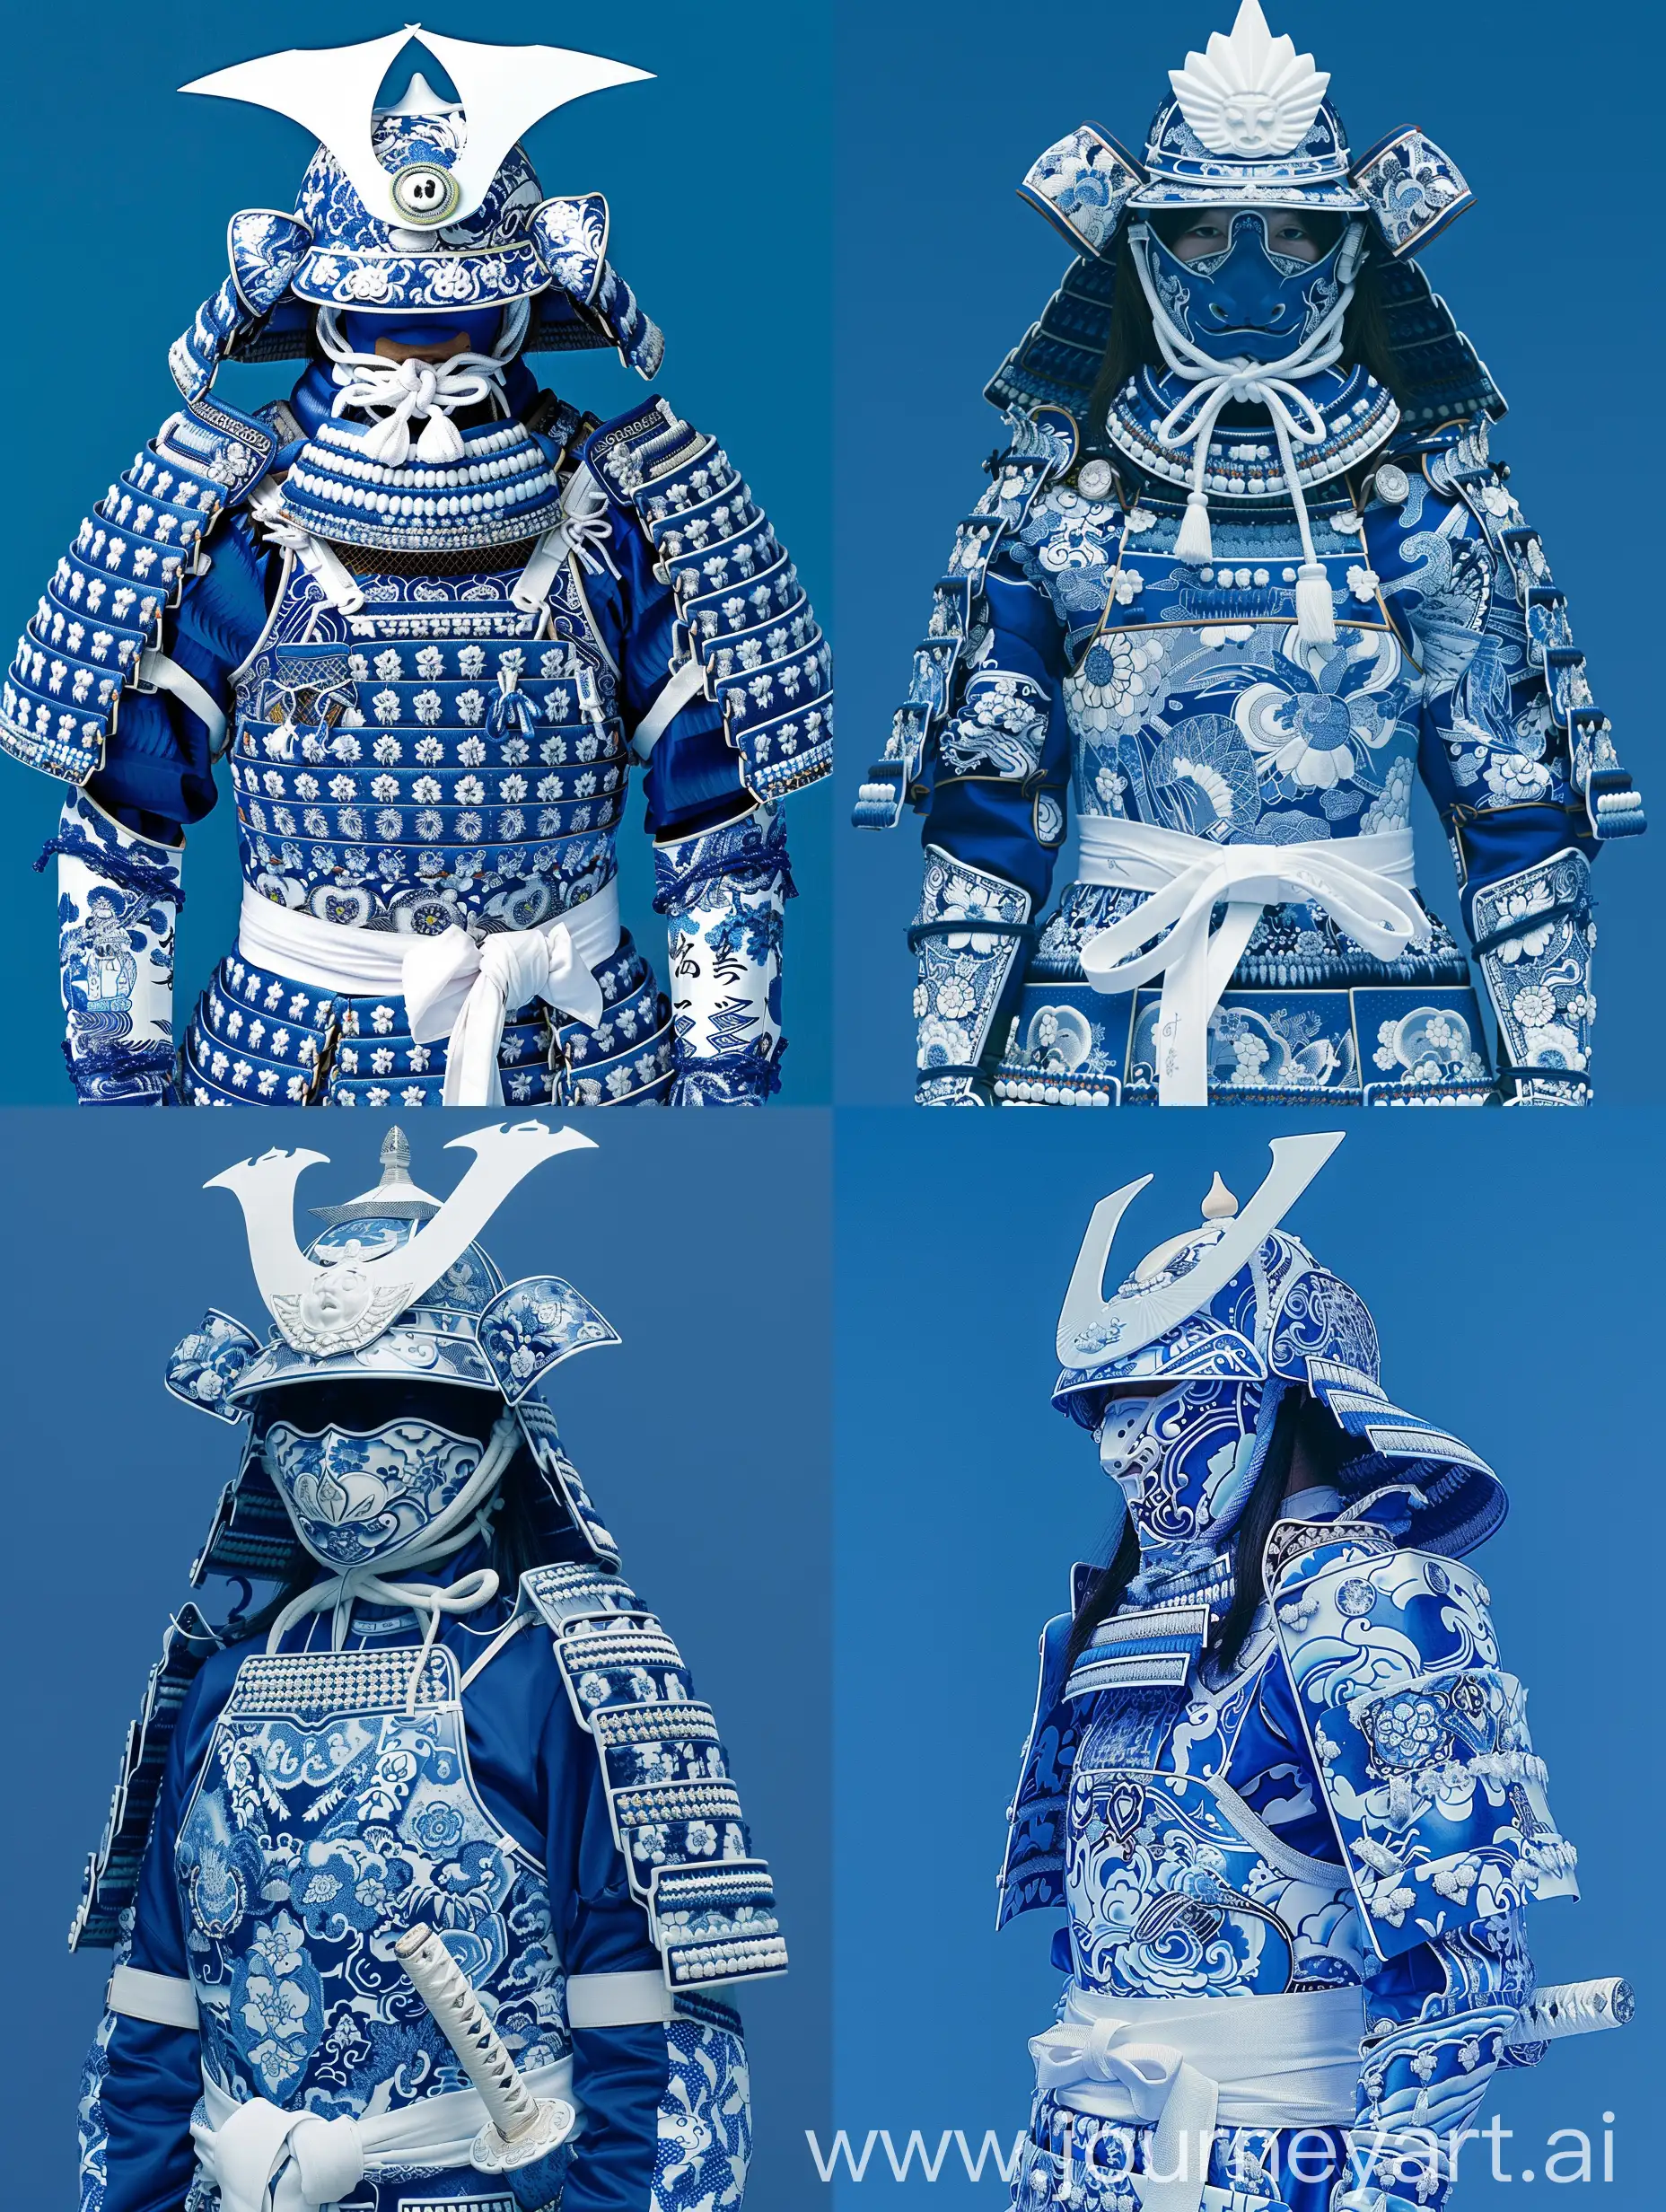 Samurai-Warrior-in-Ornate-Blue-and-White-Armor